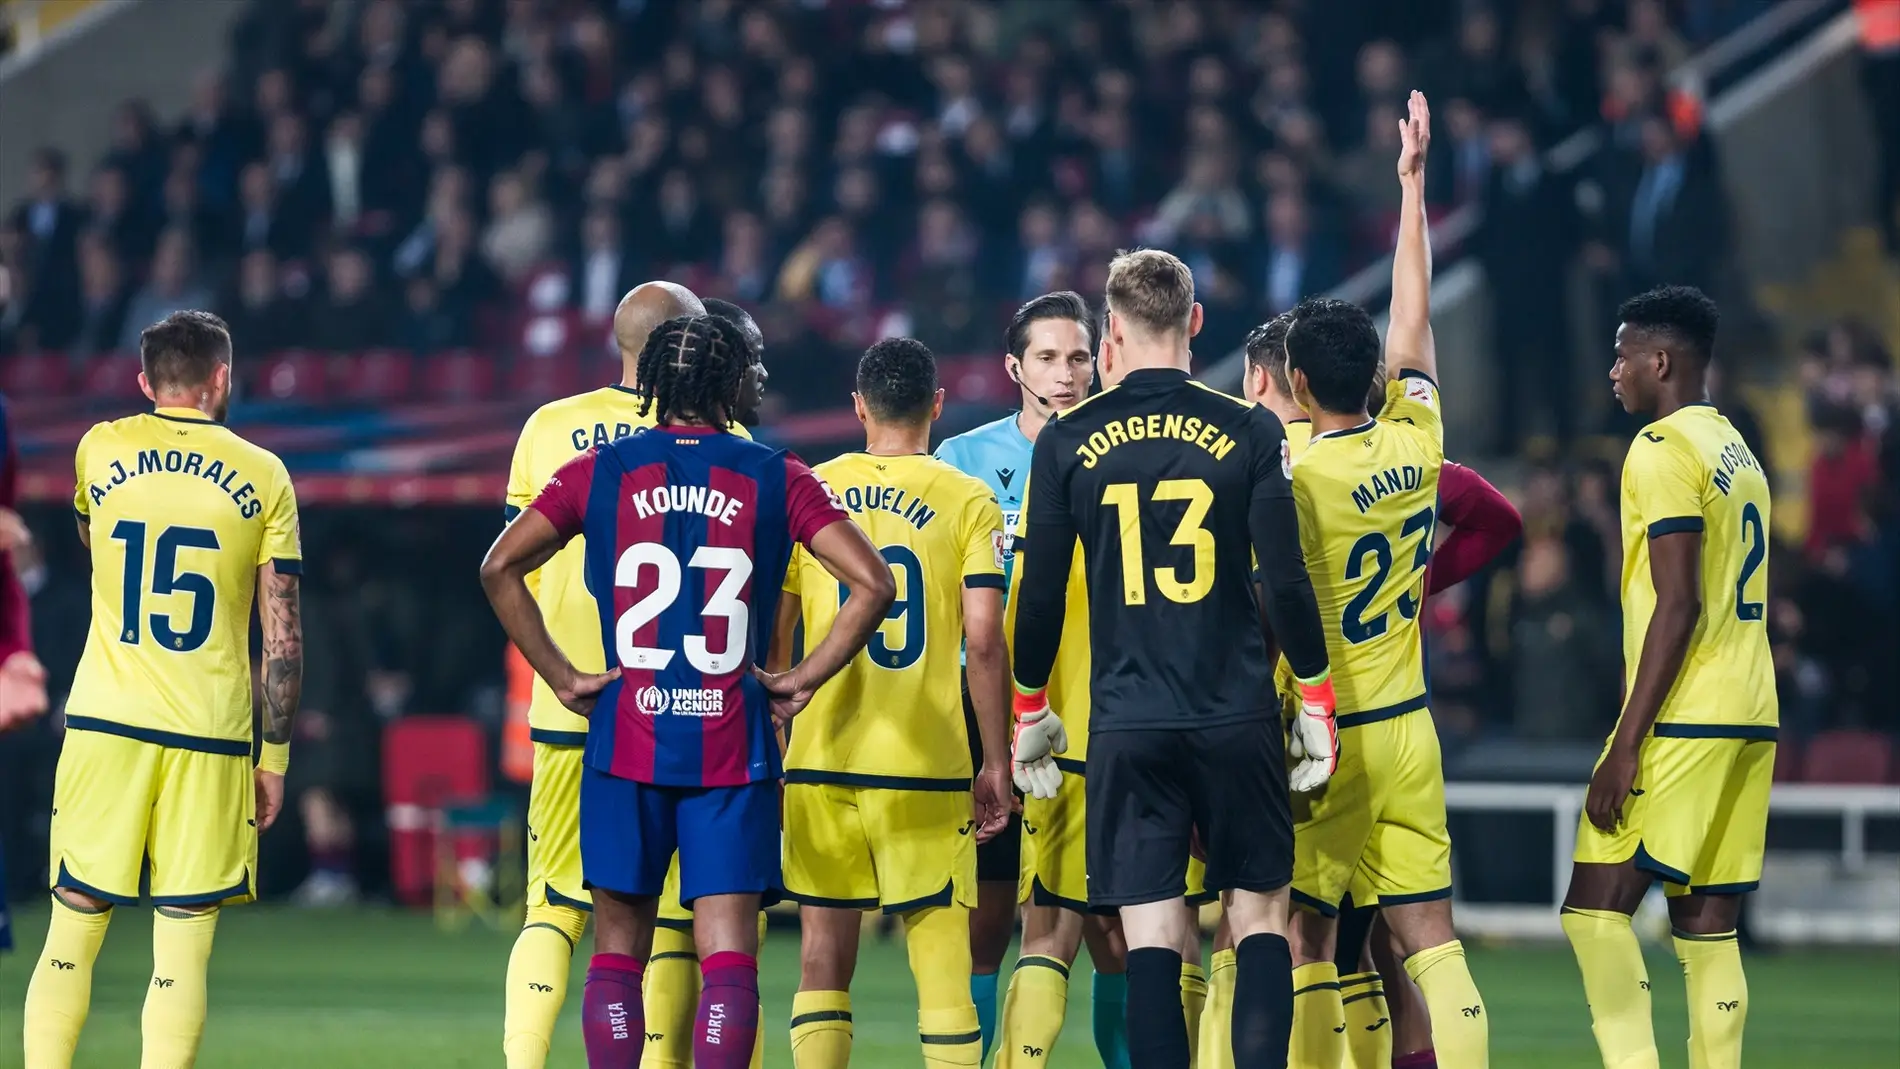 Los audios del VAR con la polémica del Barça- Villarreal: "No sería mano, cancelamos penalti"